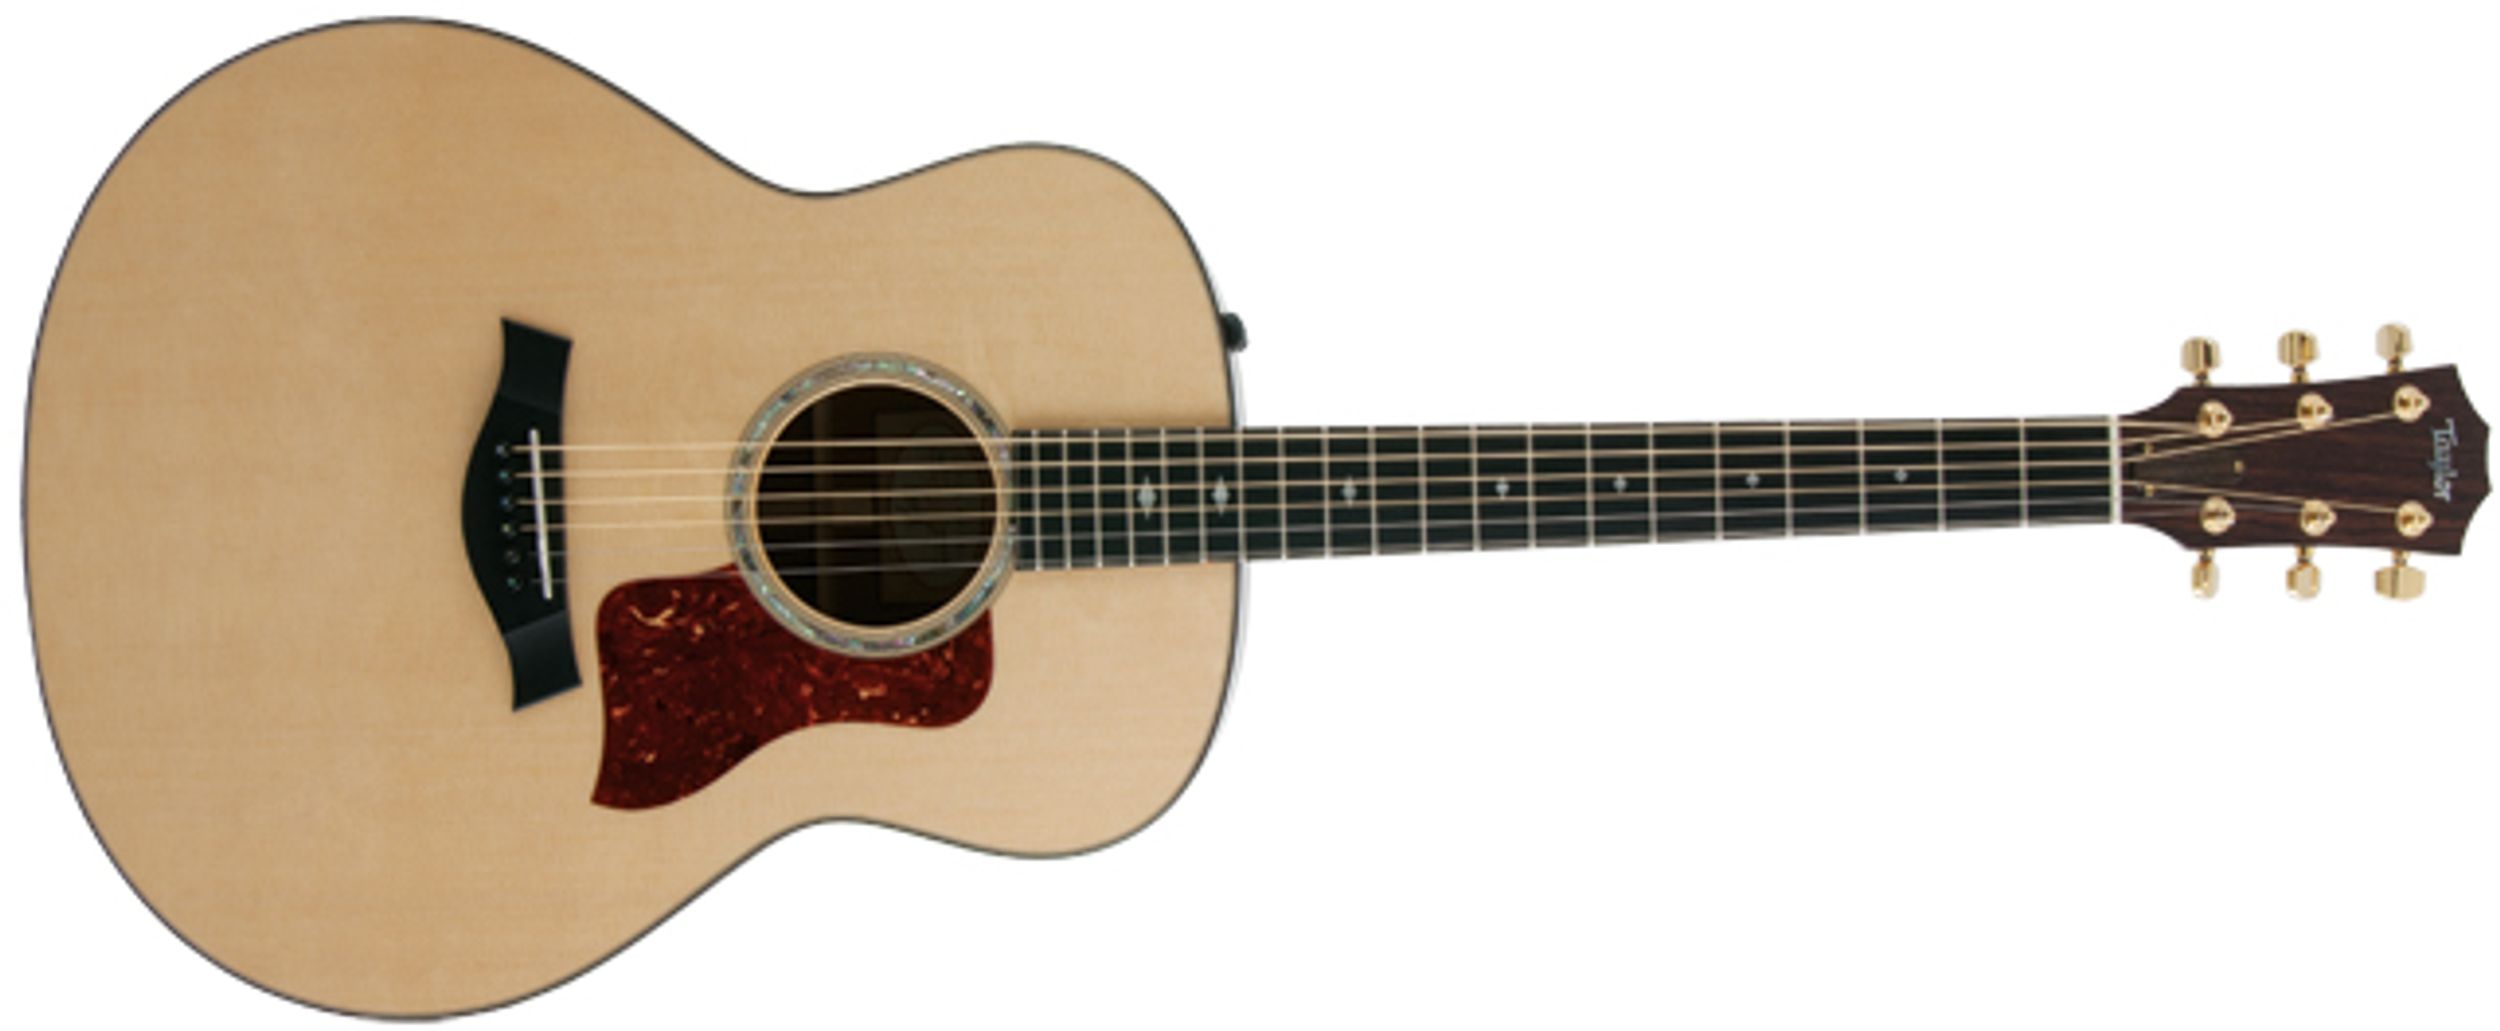 Taylor 518E Acoustic Guitar Review